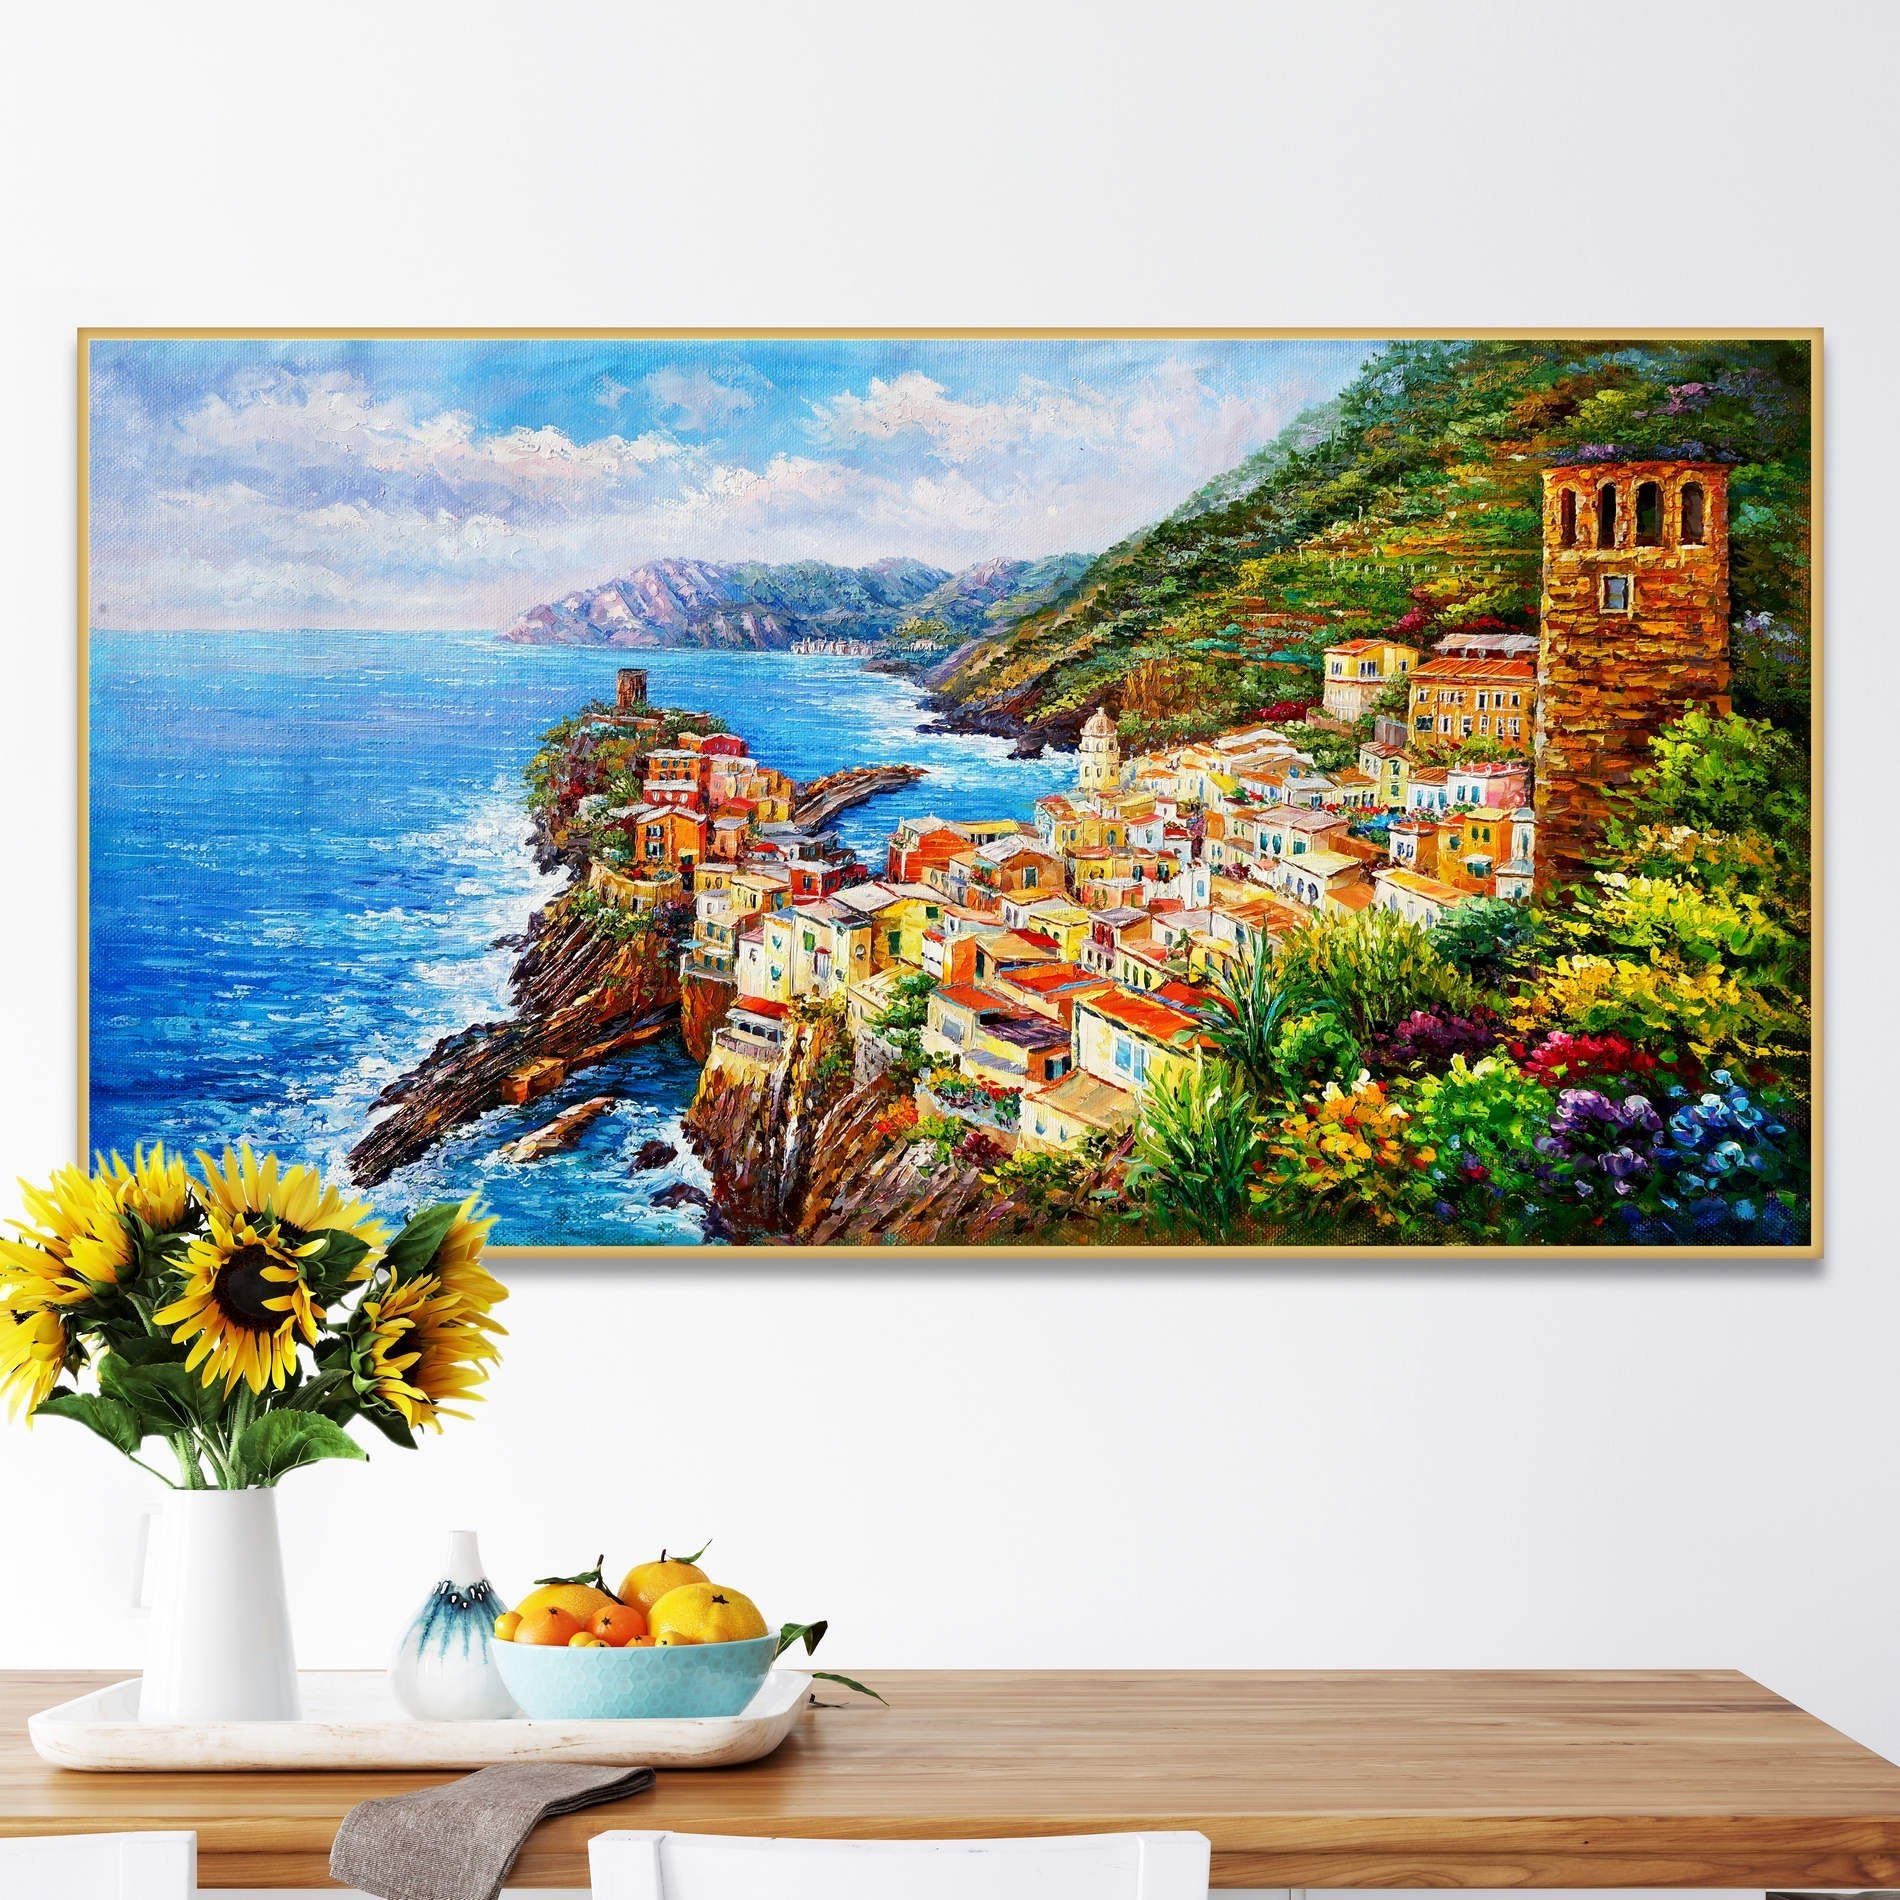 Dipinto di Vernazza nelle Cinque Terre con mare azzurro e vegetazione.